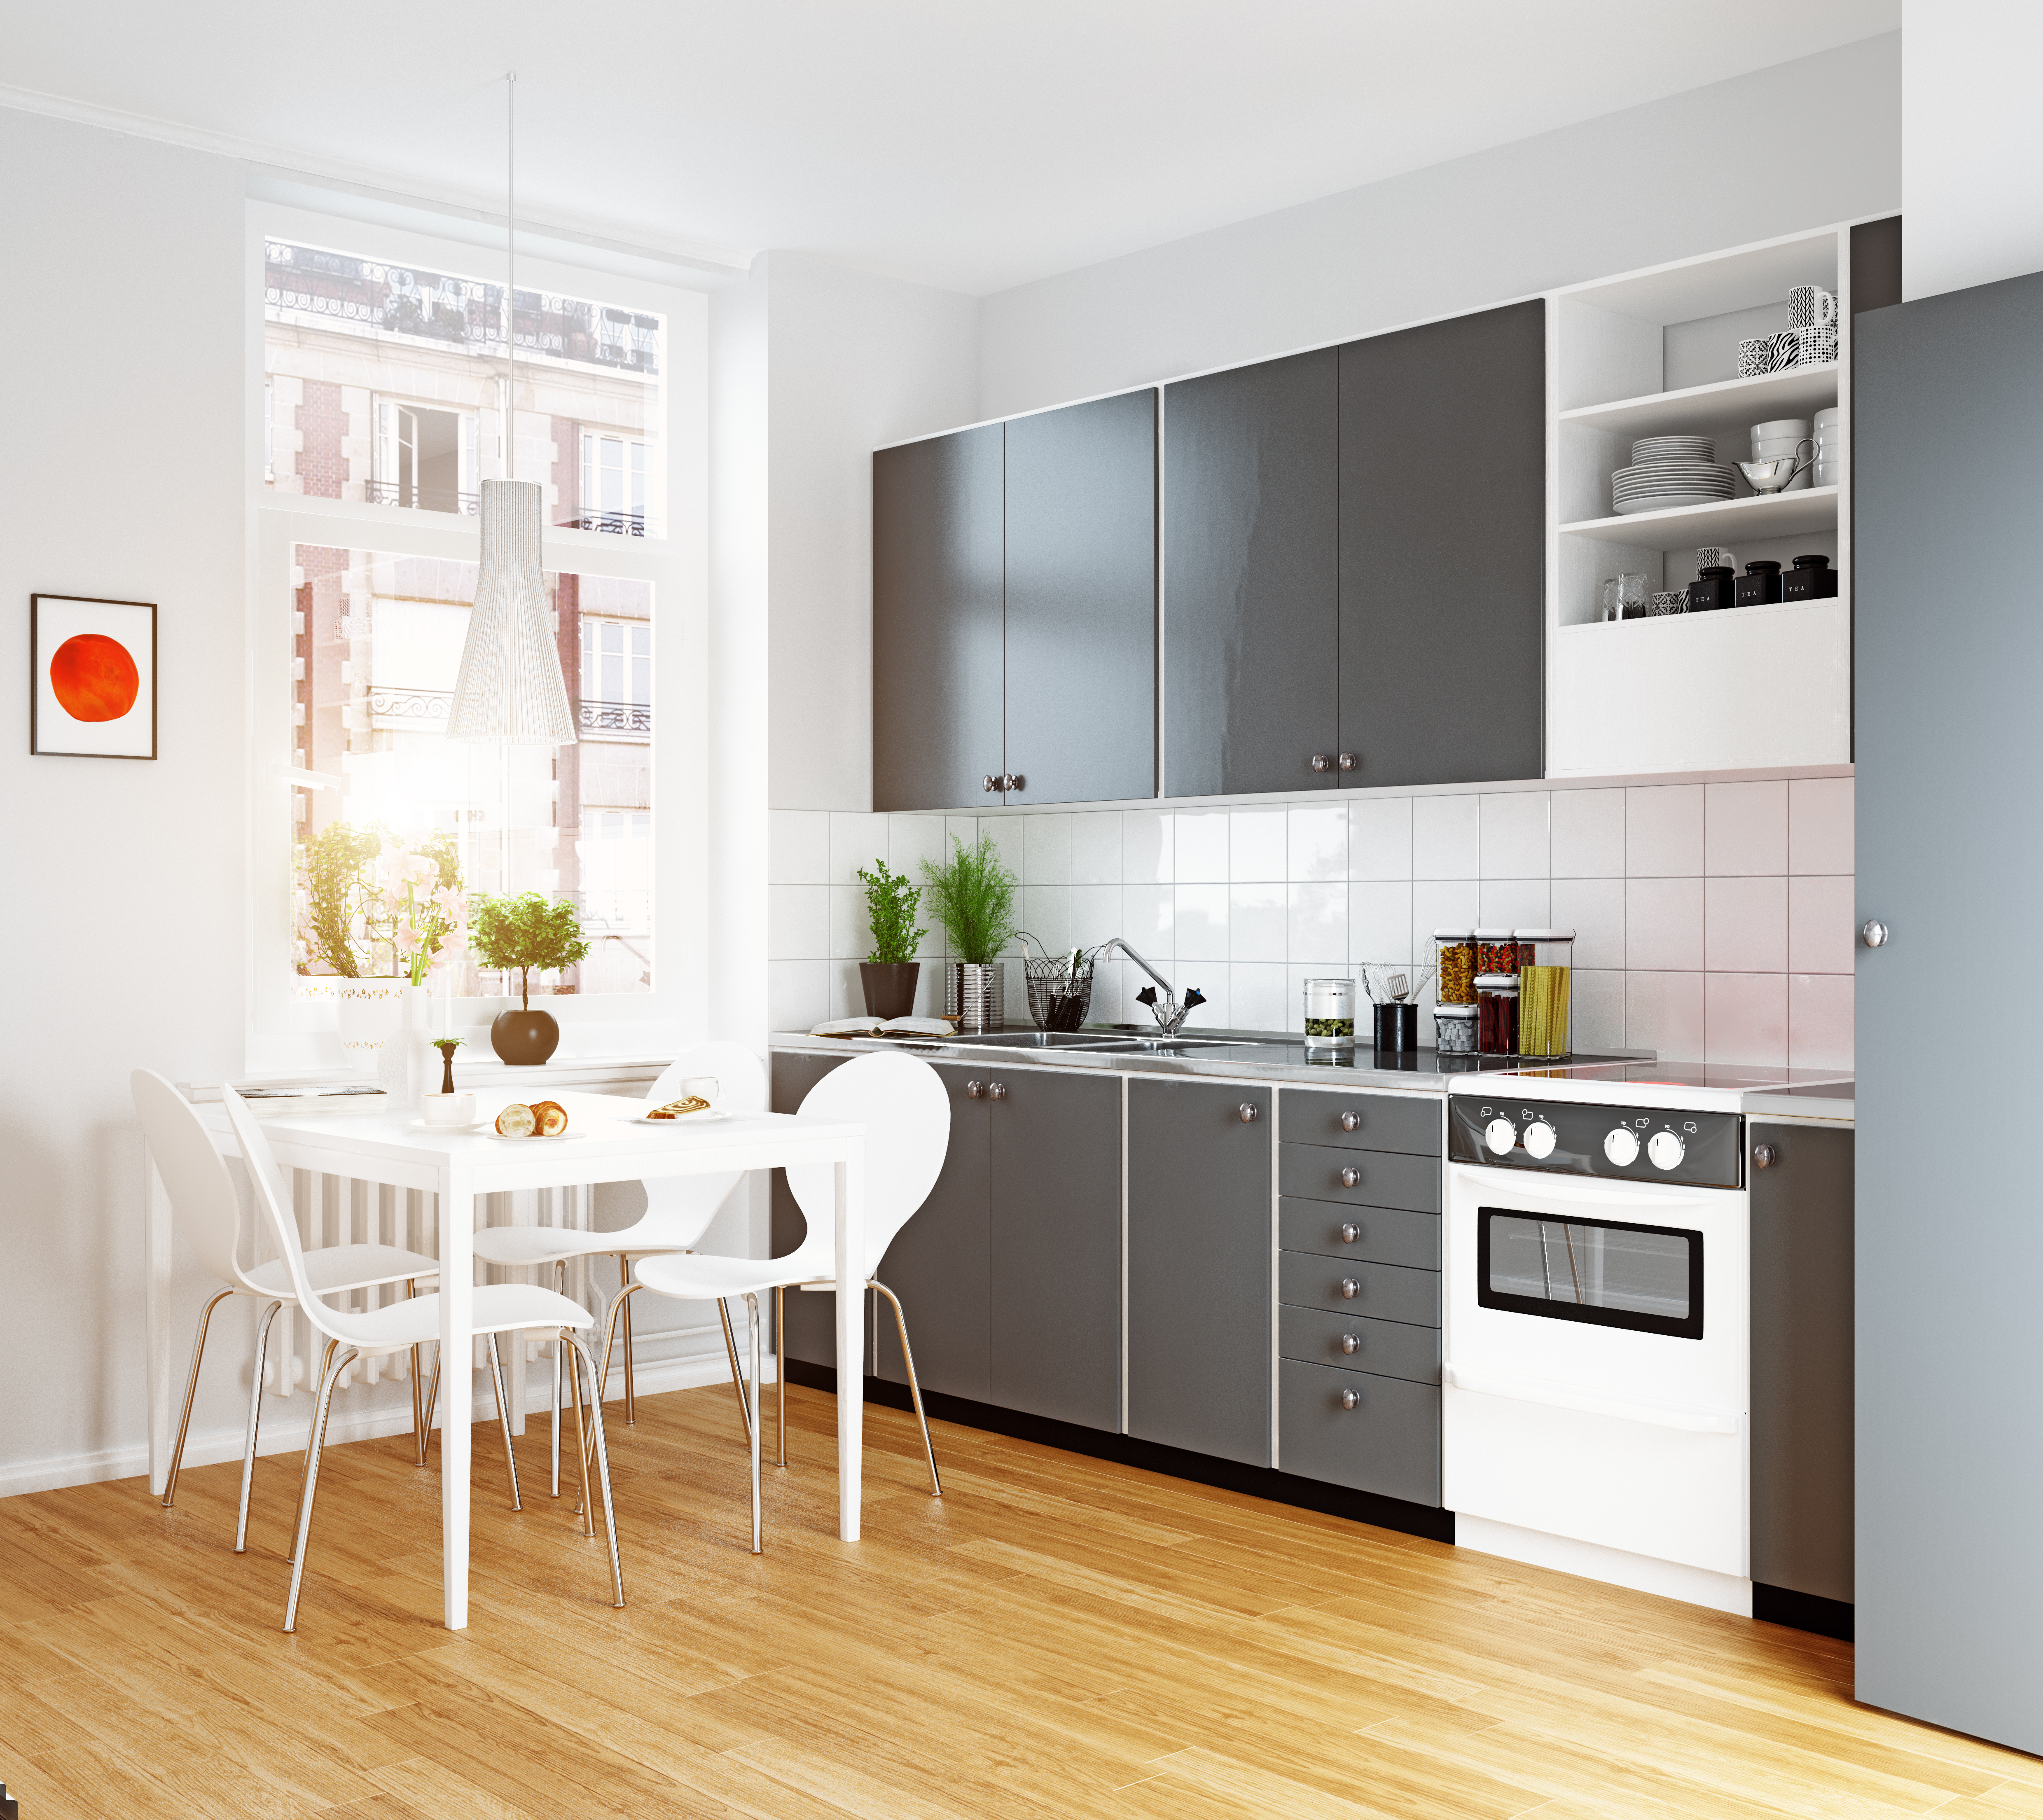 Cocinas Baratas- Ideas para decorar sin gastar mucho dinero  Diseño  muebles de cocina, Decoración de cocina, Muebles de cocina